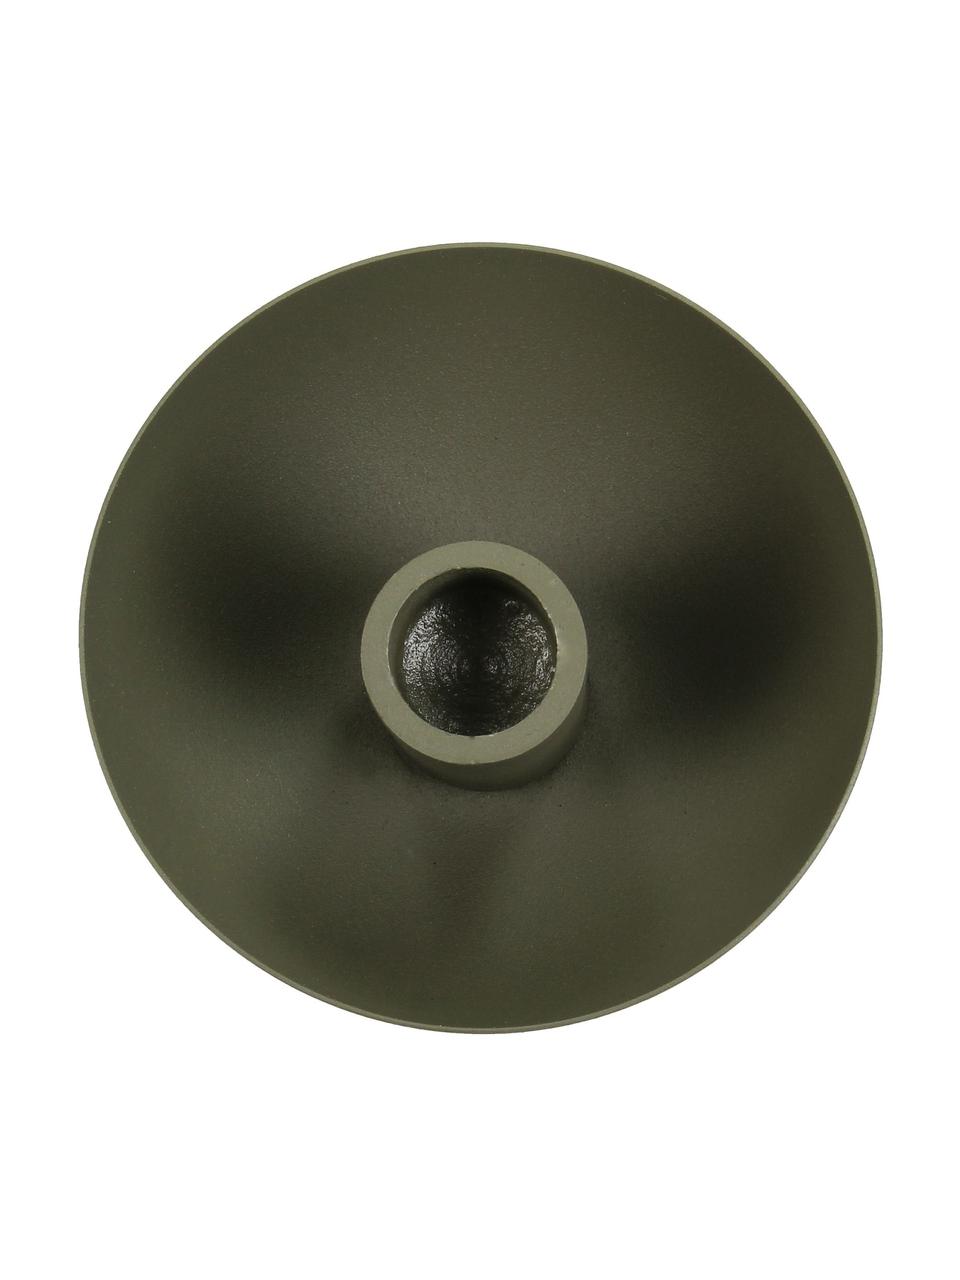 Candelabro Druden, Aluminio, Verde oscuro, Ø 10 x Al 5 cm